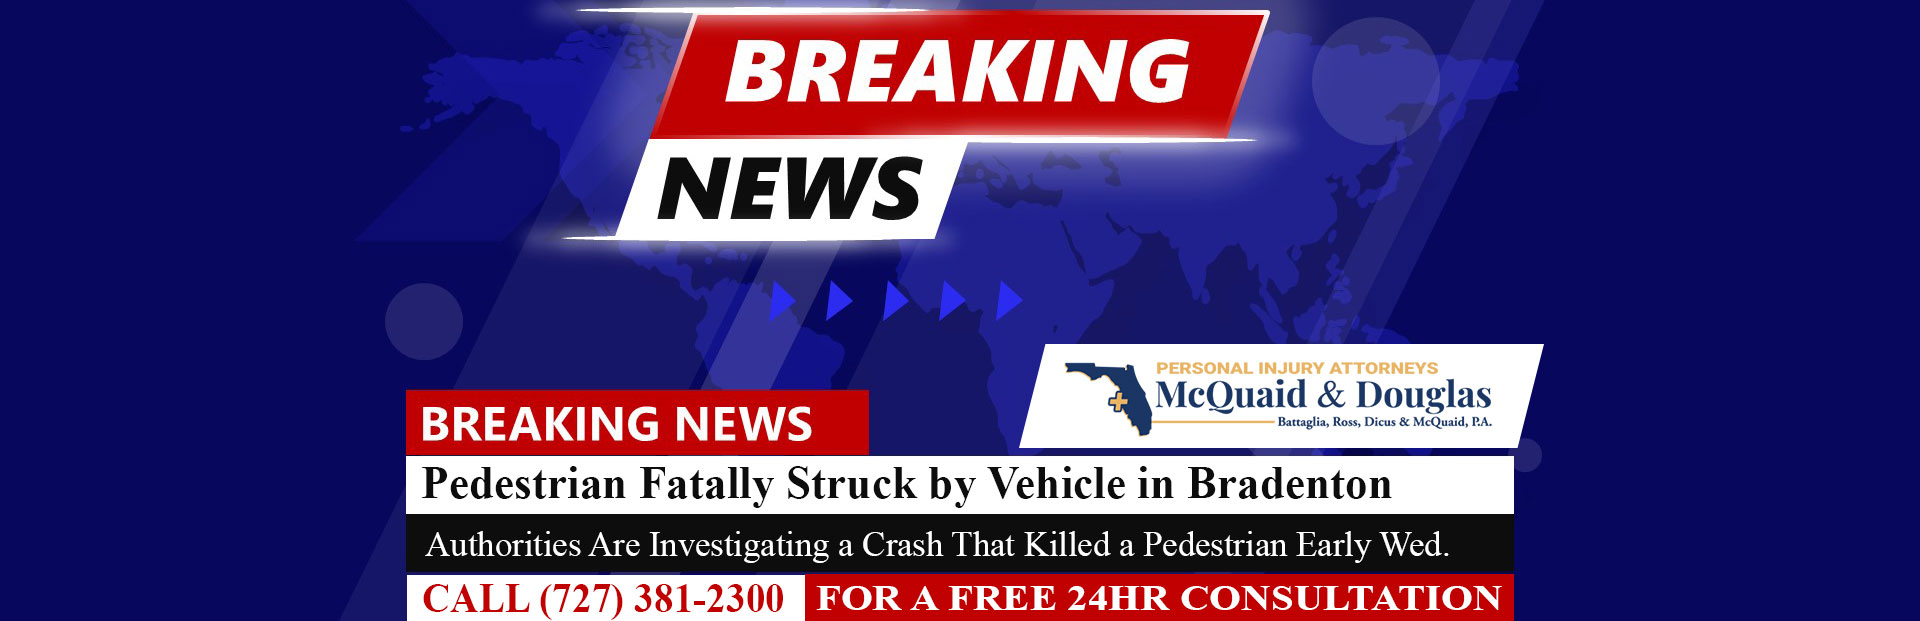 [7-20-22] Pedestrian Fatally Struck by Vehicle in Bradenton